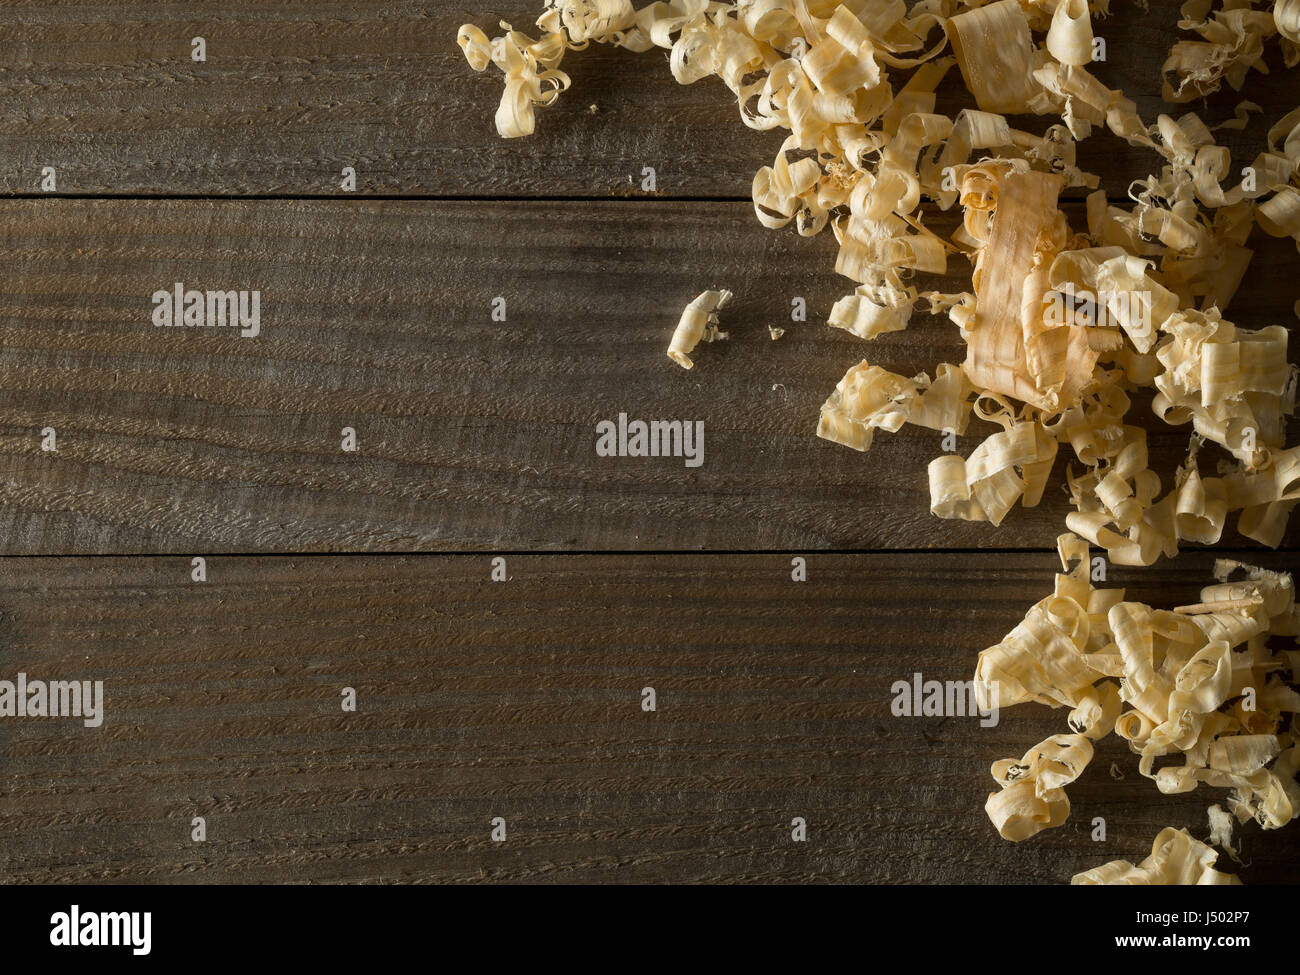 Marrone chiaro dei trucioli di legno da falegname Pialla a mano o lavoro di cesello su assi di legno con uno sfondo con spazio di copia Foto Stock